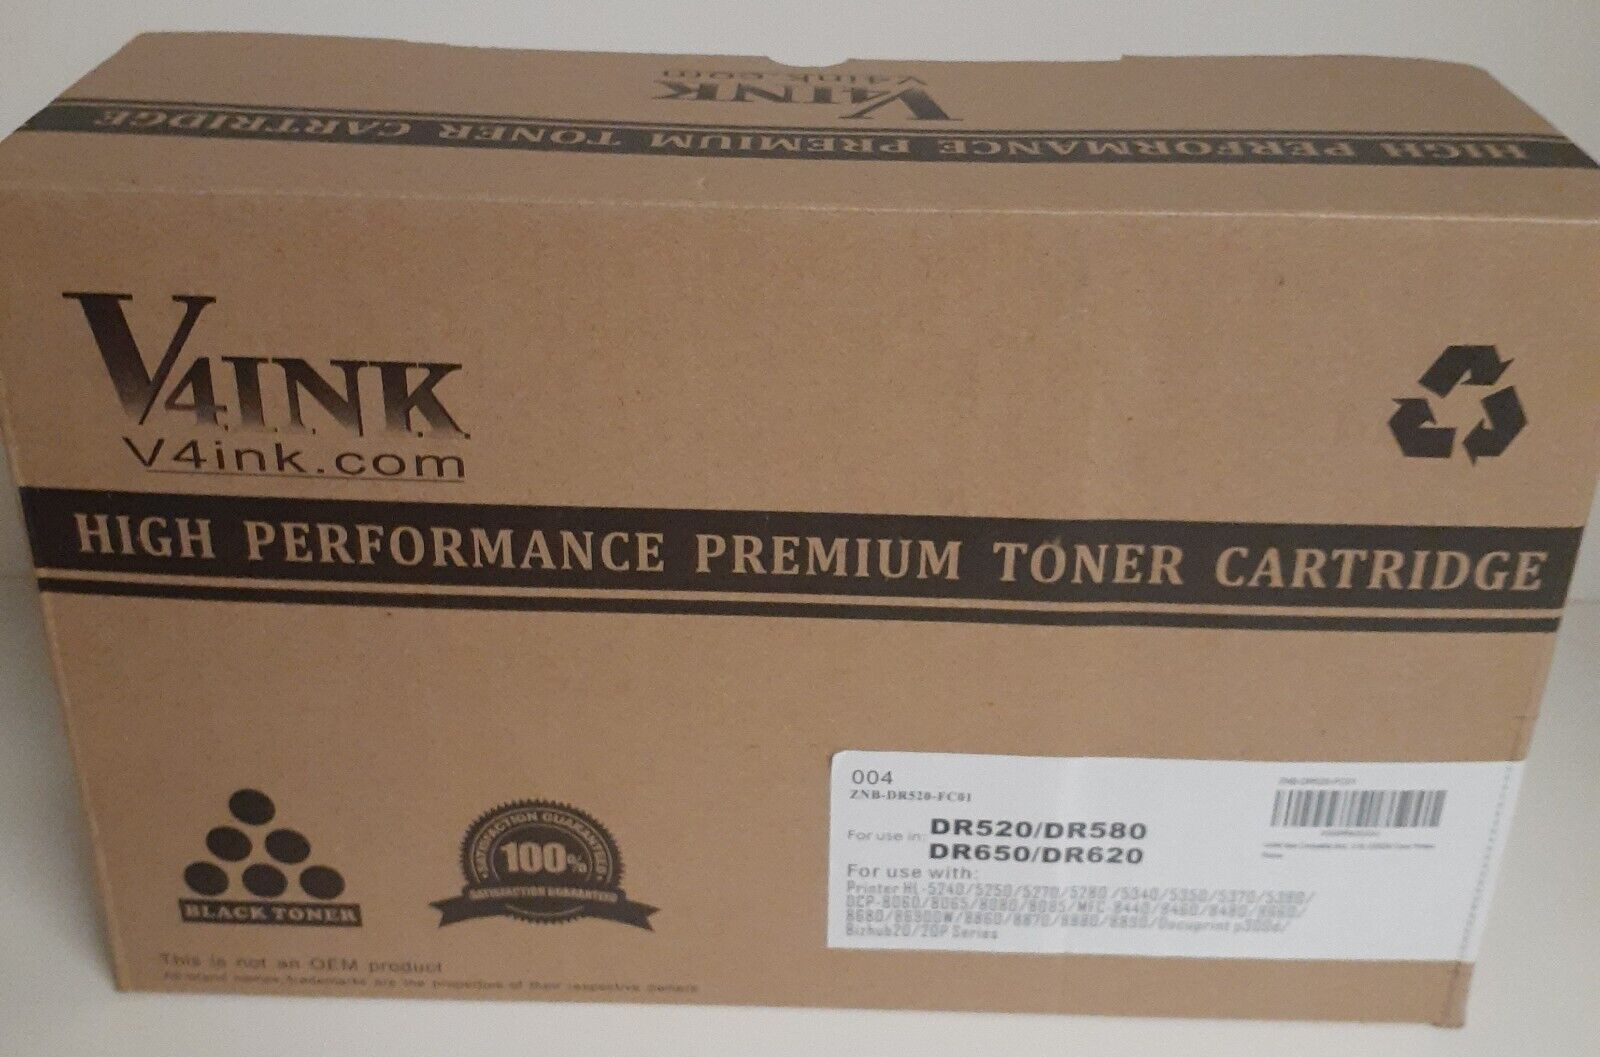 V4ink Premium Toner Cartridge DR520/Dr580 DR650/DR620 still sealed in package